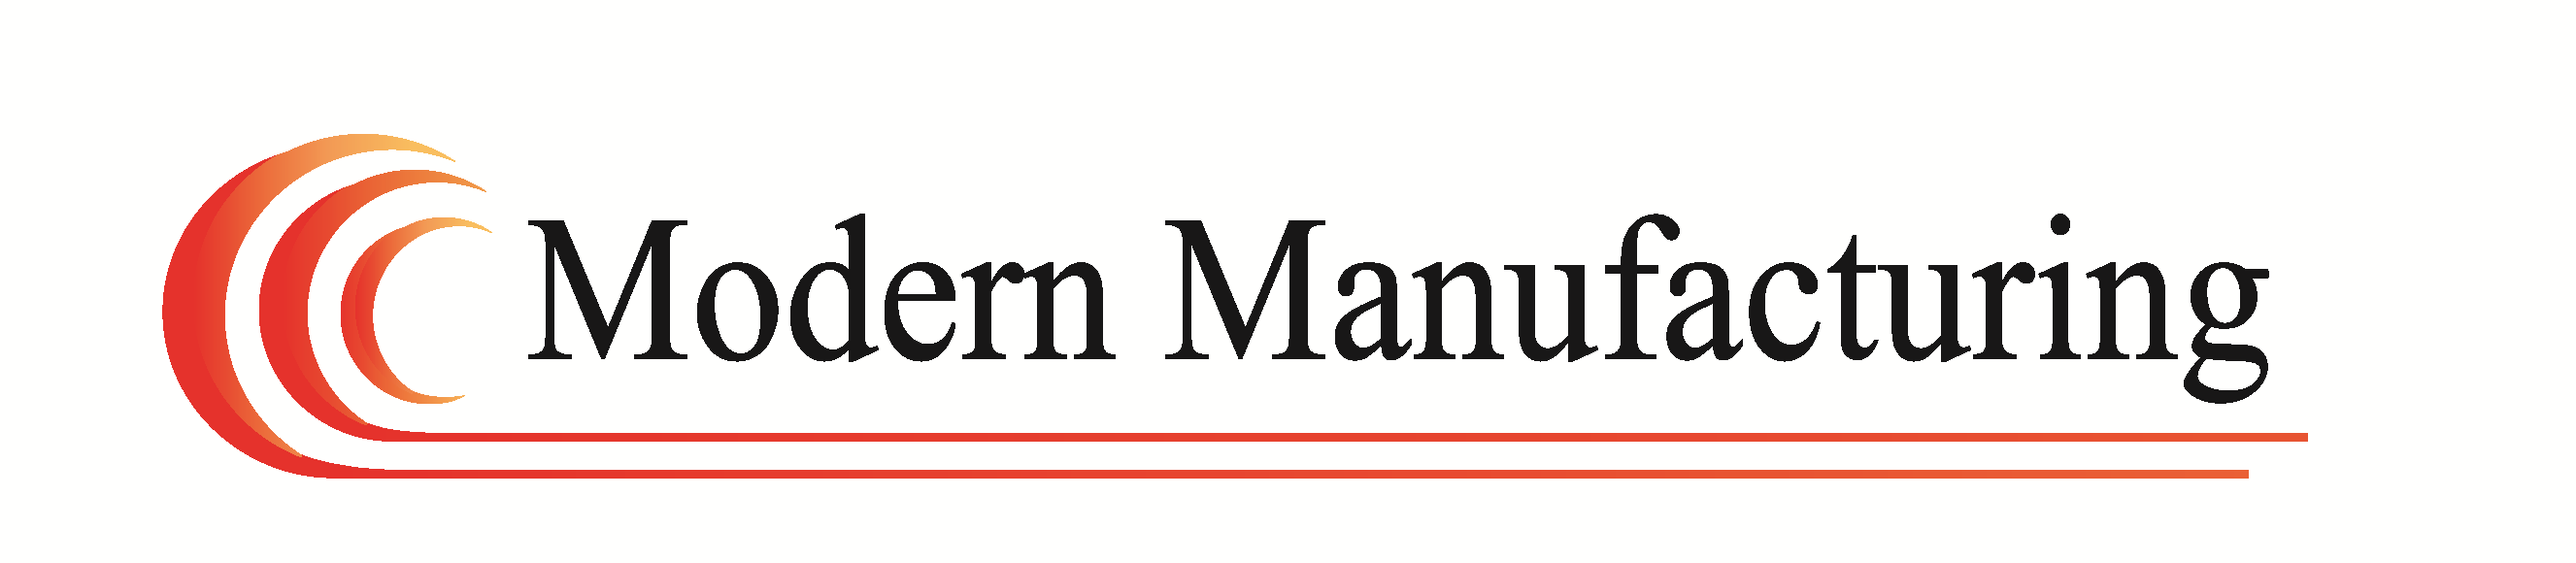 ModernManufacturing Logo